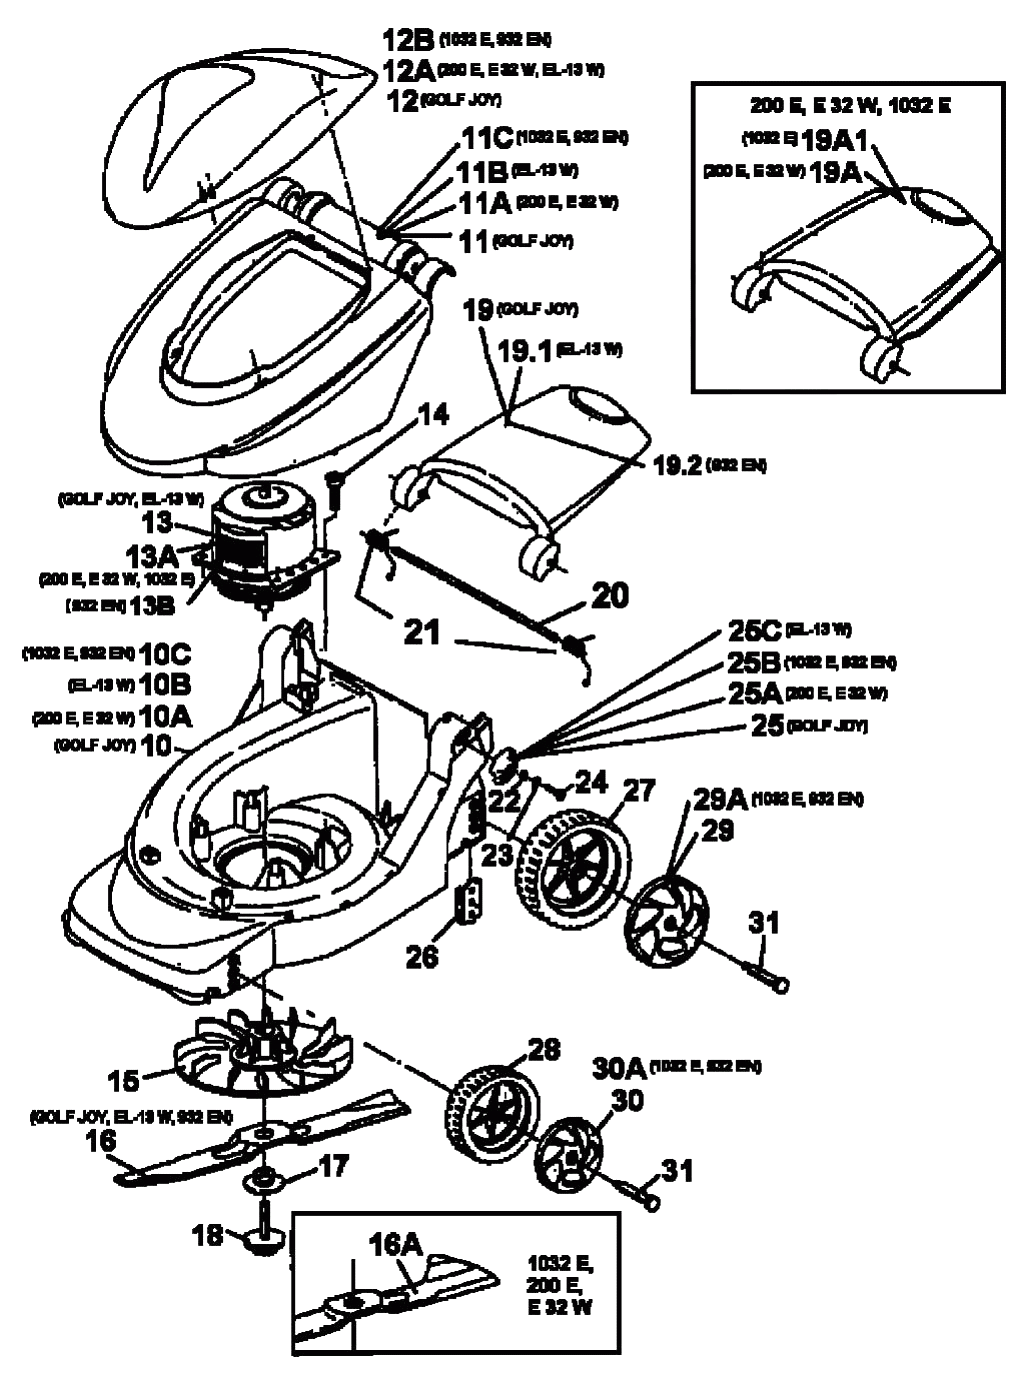 MTD Артикул 18B-C3D-678 (год выпуска 2000). Электромотор, ножи, колеса